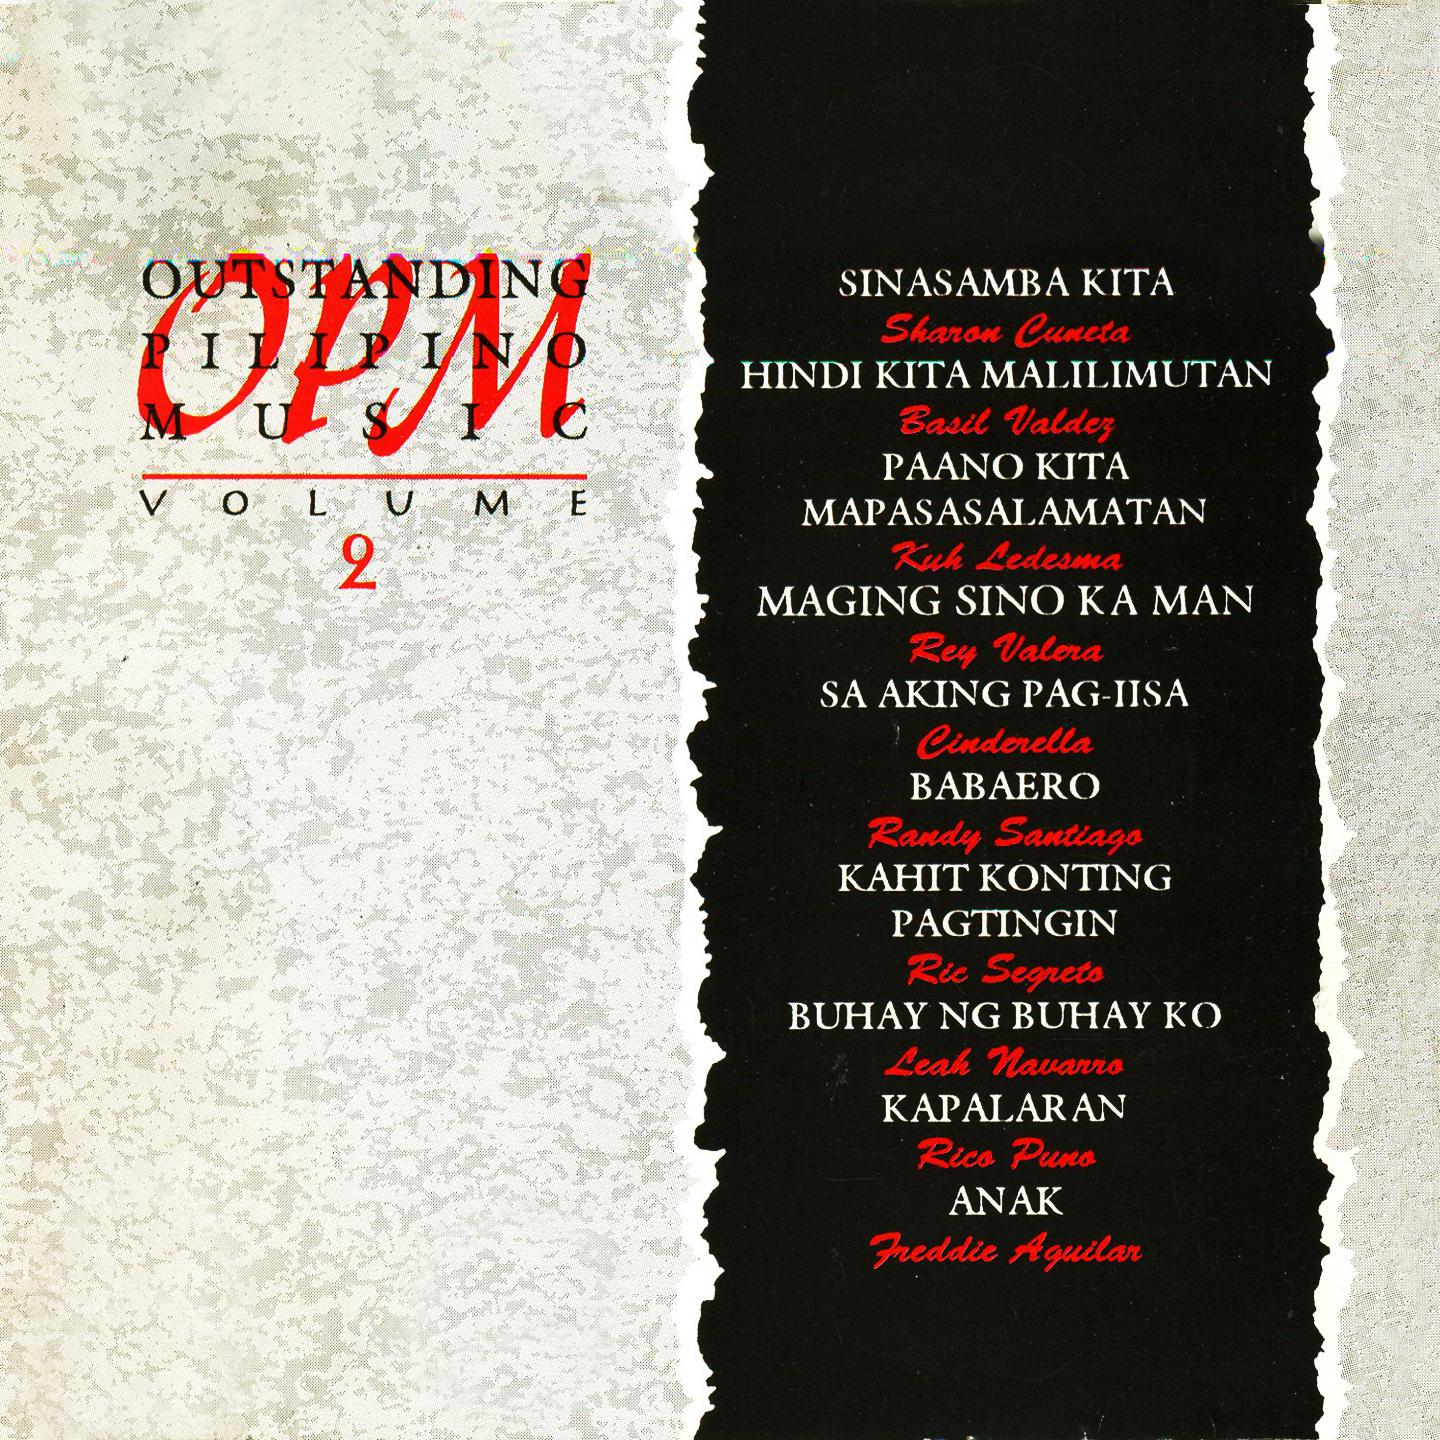 Outstanding Pilipino Music, Vol. 2